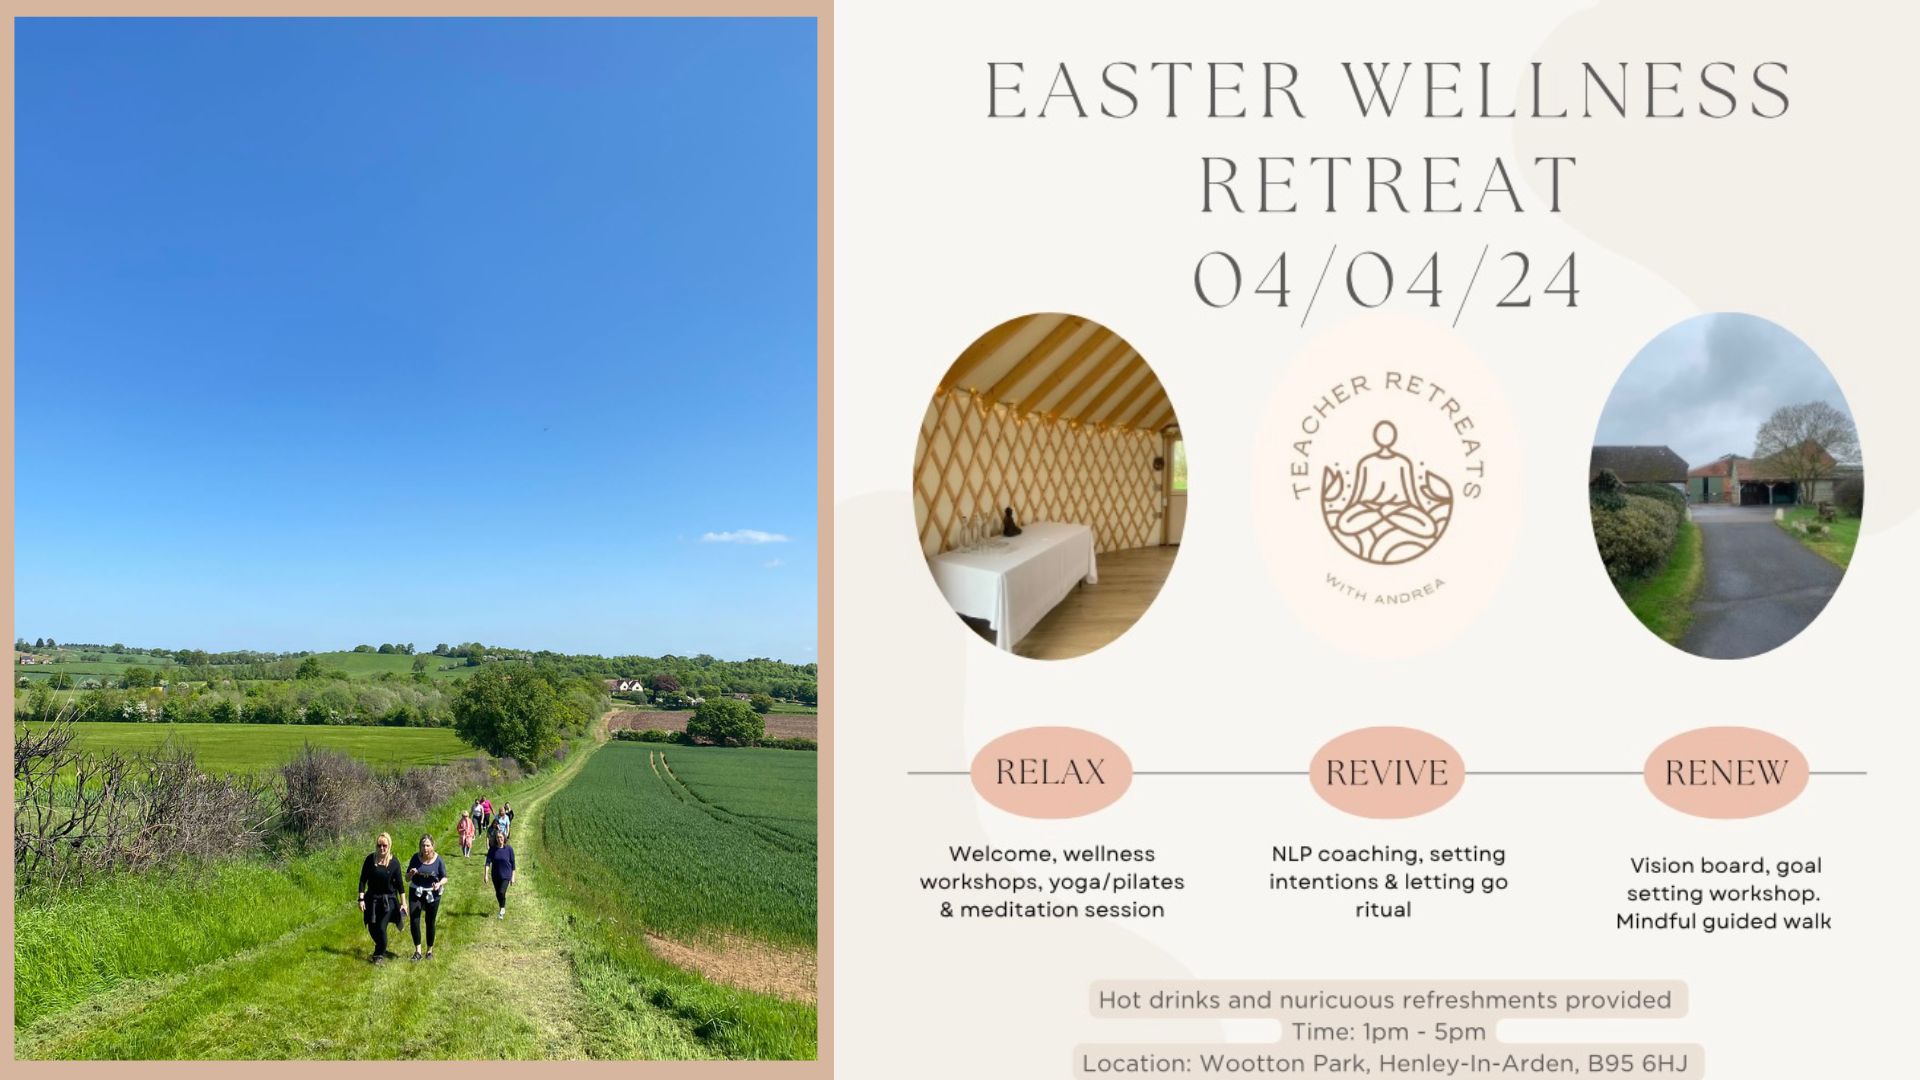 Easter Wellness Retreat at Woottton Park Wellness by AMK Teacher Retreats